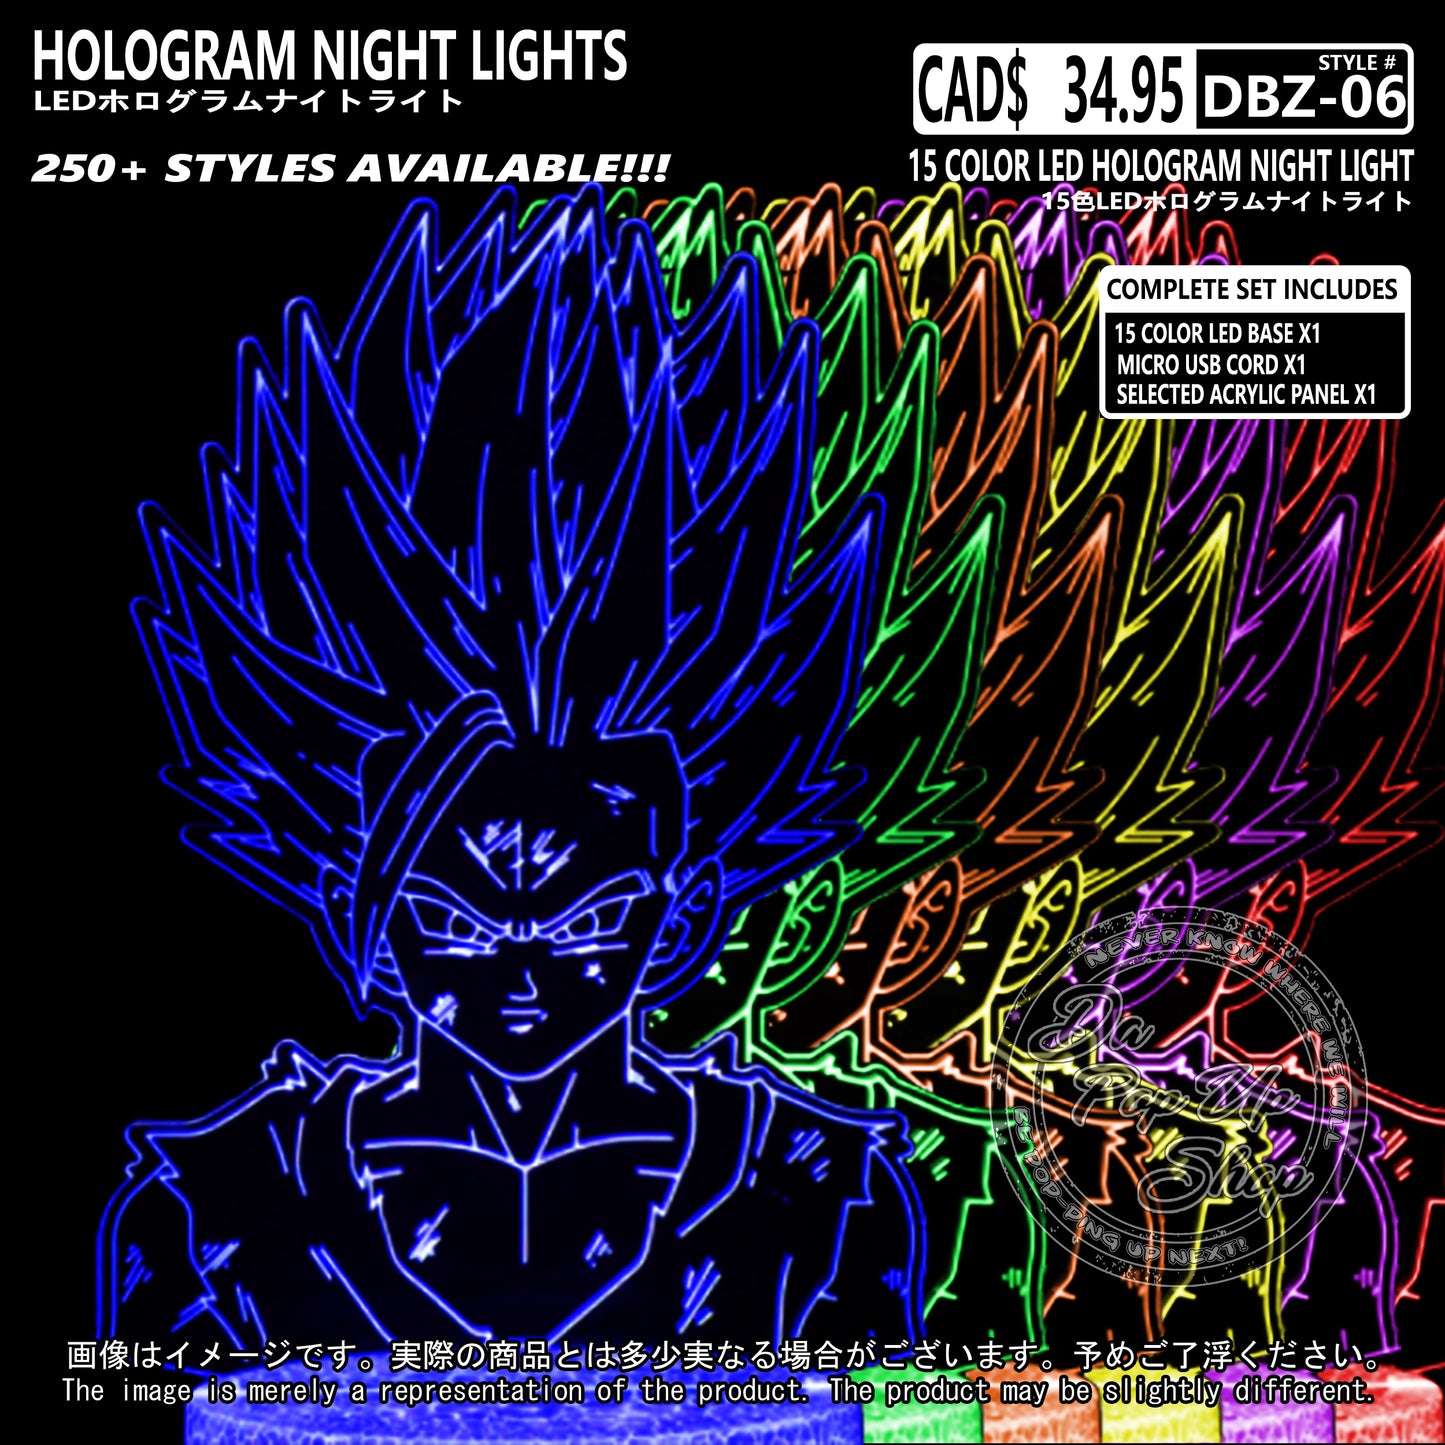 (DBZ-06) Dragon Ball Z Hologram LED Night Light